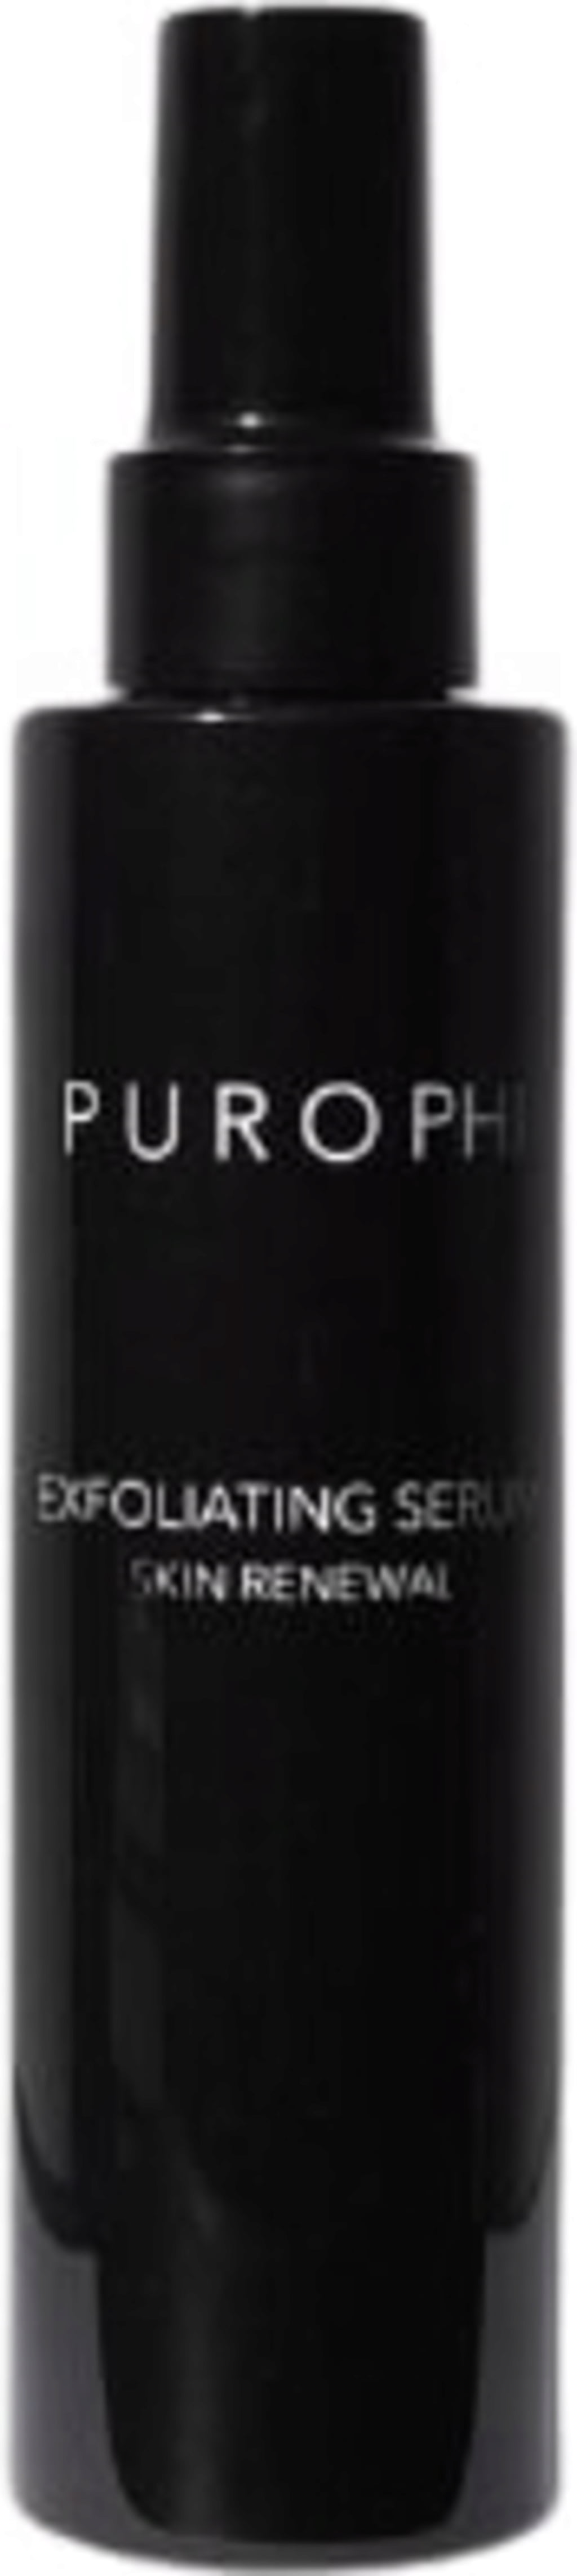 PUROPHI Exfoliating Serum - 150 ml